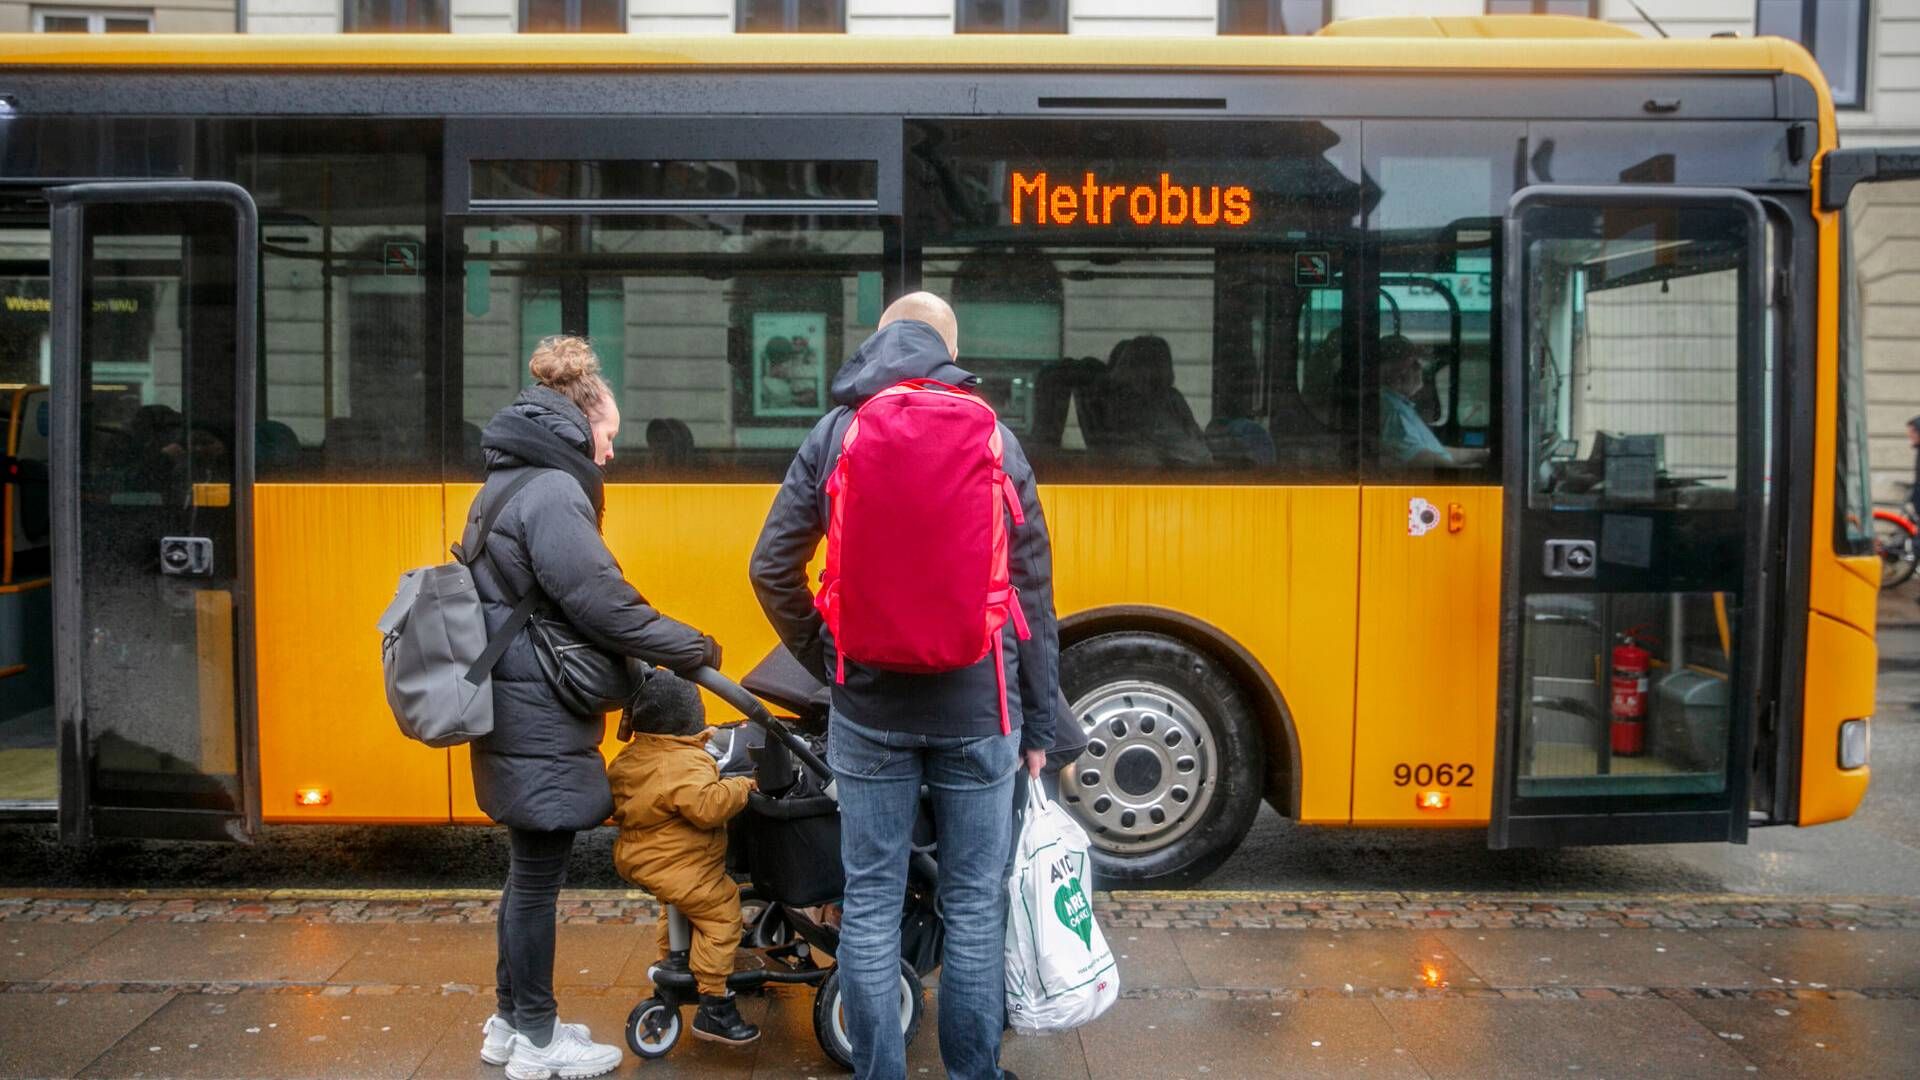 Københavns Kommune har en målsætning om, at 25 pct. af alle ture til, fra og i hovedstaden skal være med kollektiv transport. Det tal var i 2022 på 18 pct. | Foto: Miriam Dalsgaard/Ritzau Scanpix